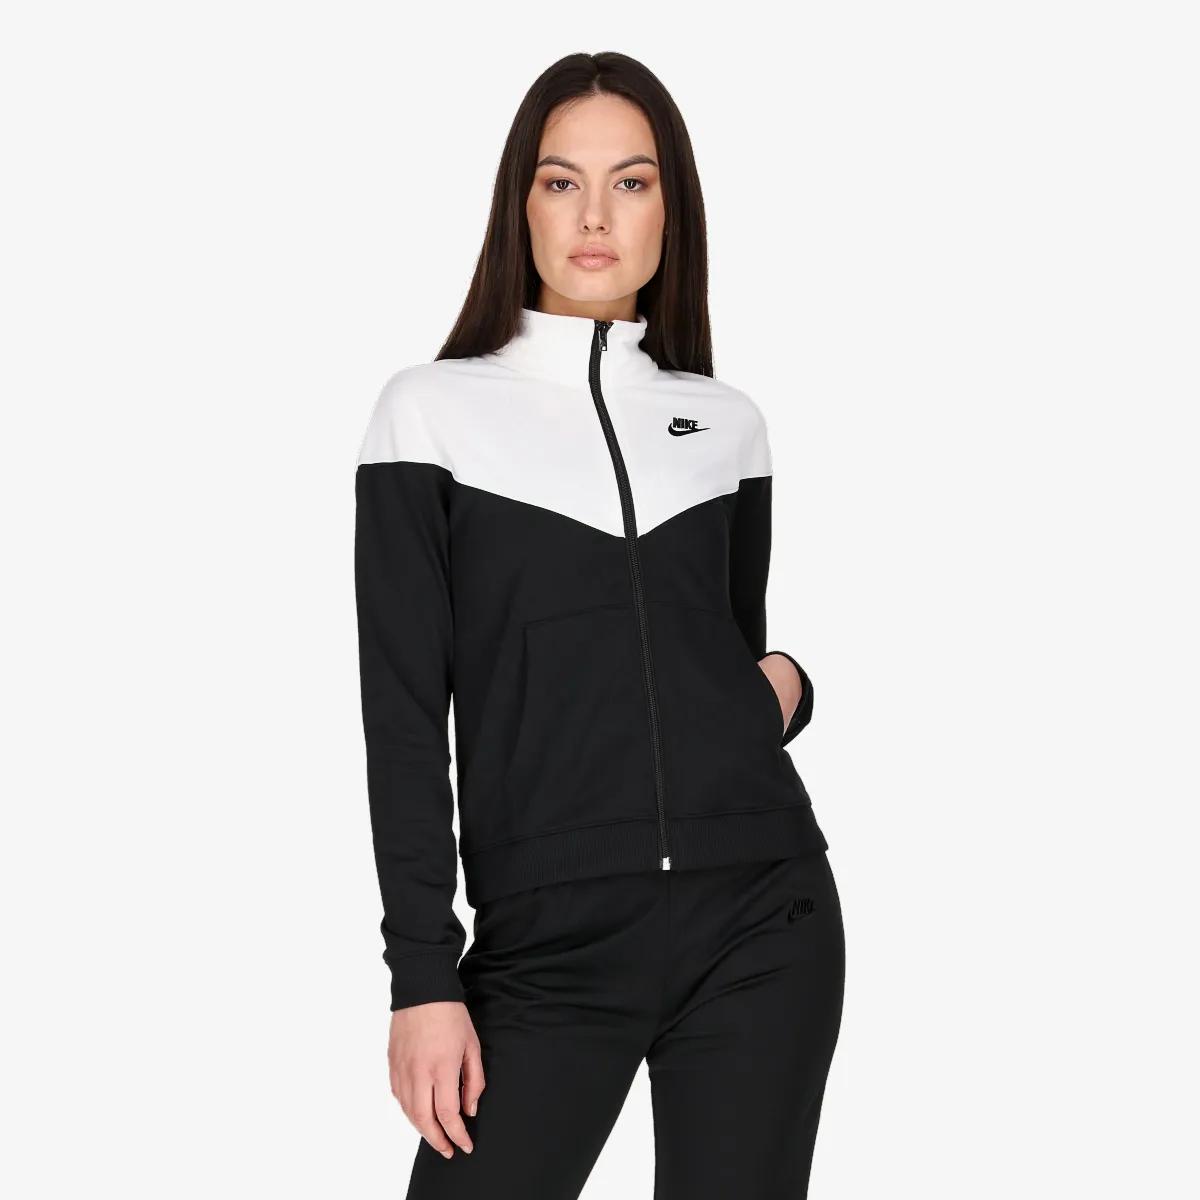 Nike Trening Sportswear Women's Tracksuit 